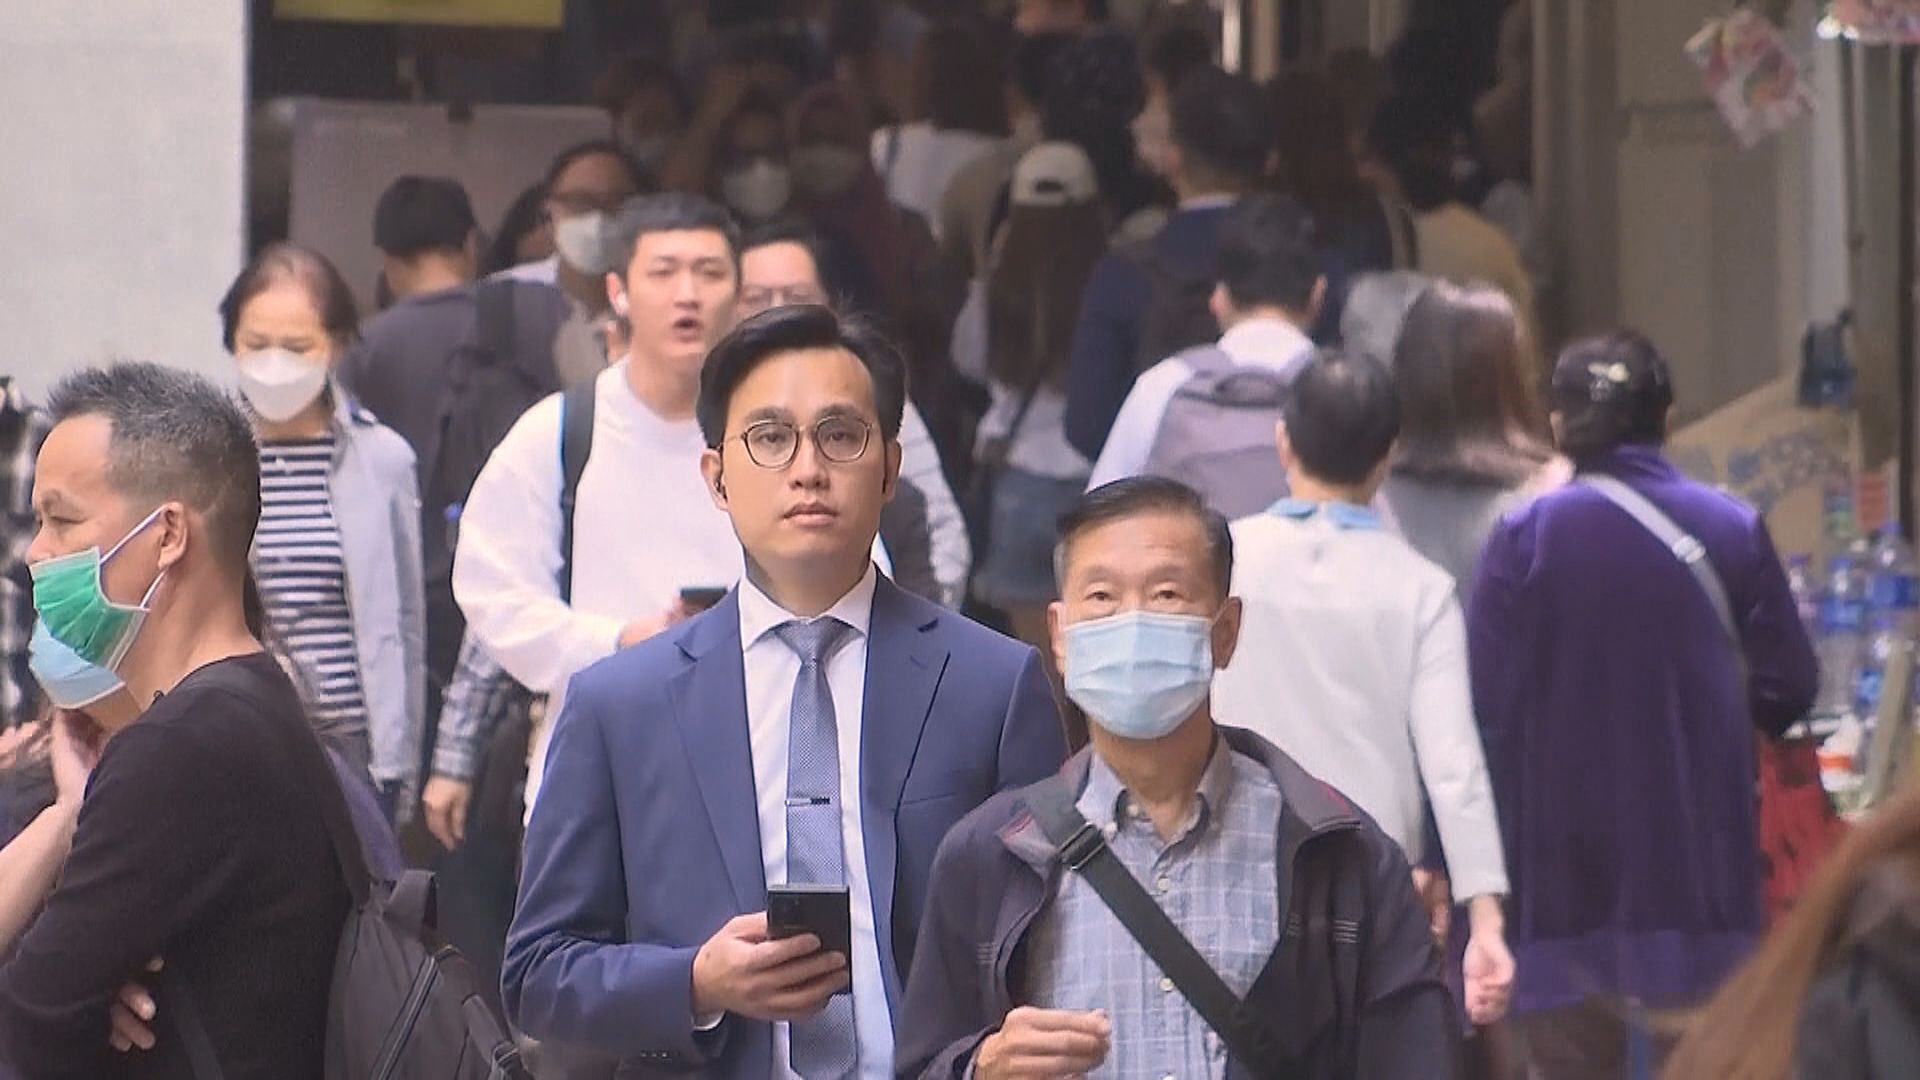 有調查指香港成全球生活費用第二高城市